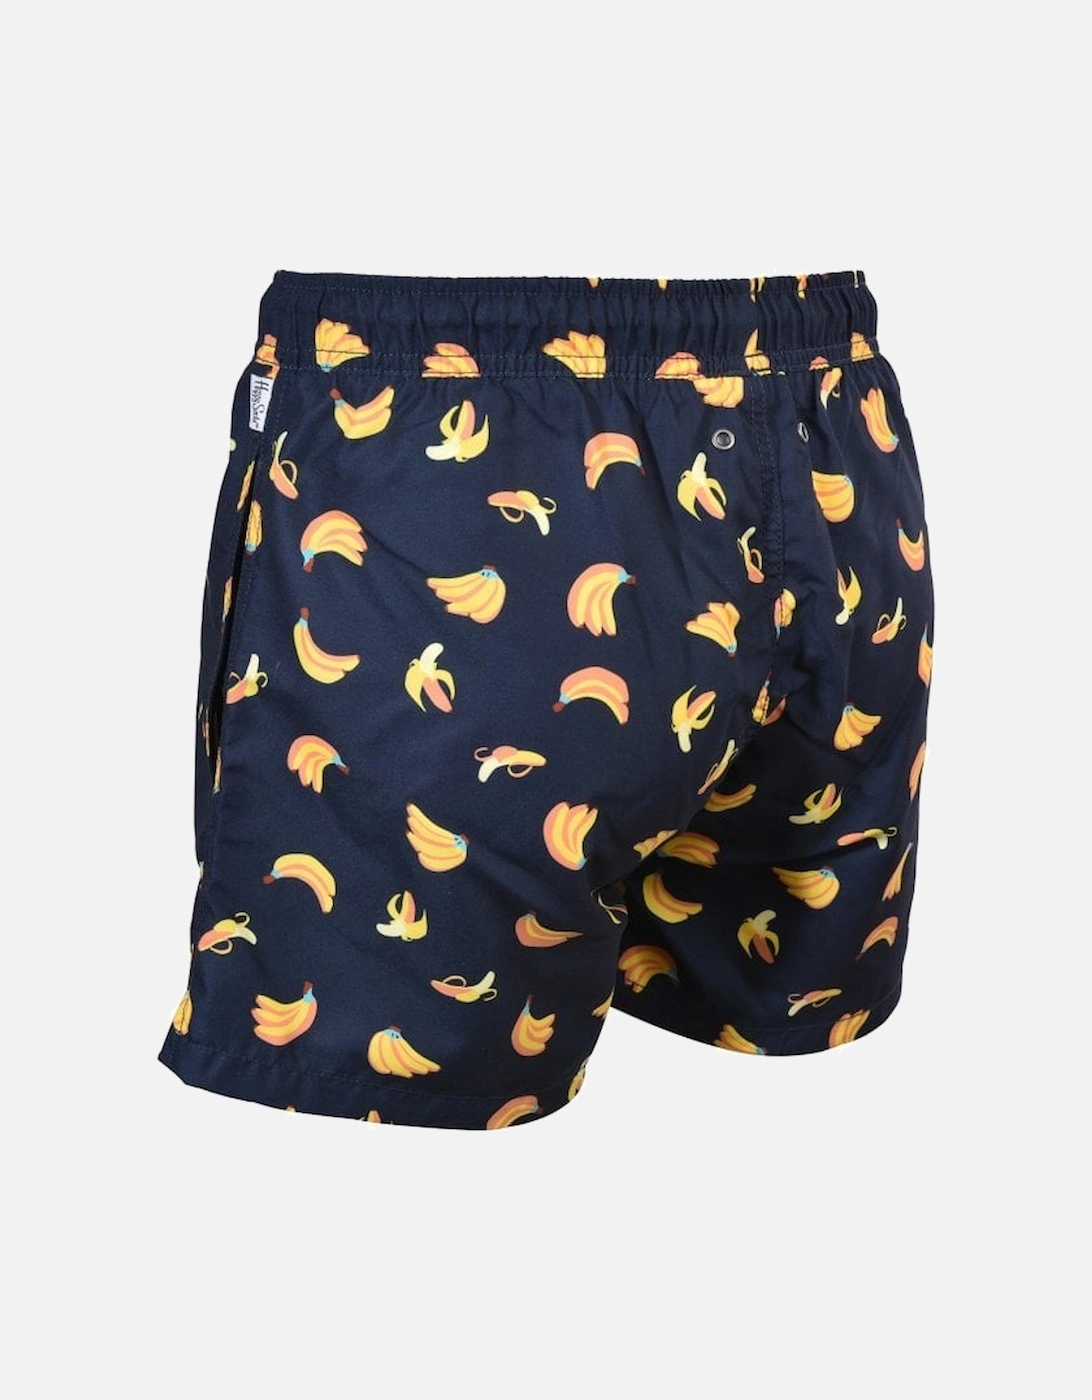 Banana Swim Shorts, Navy/yellow